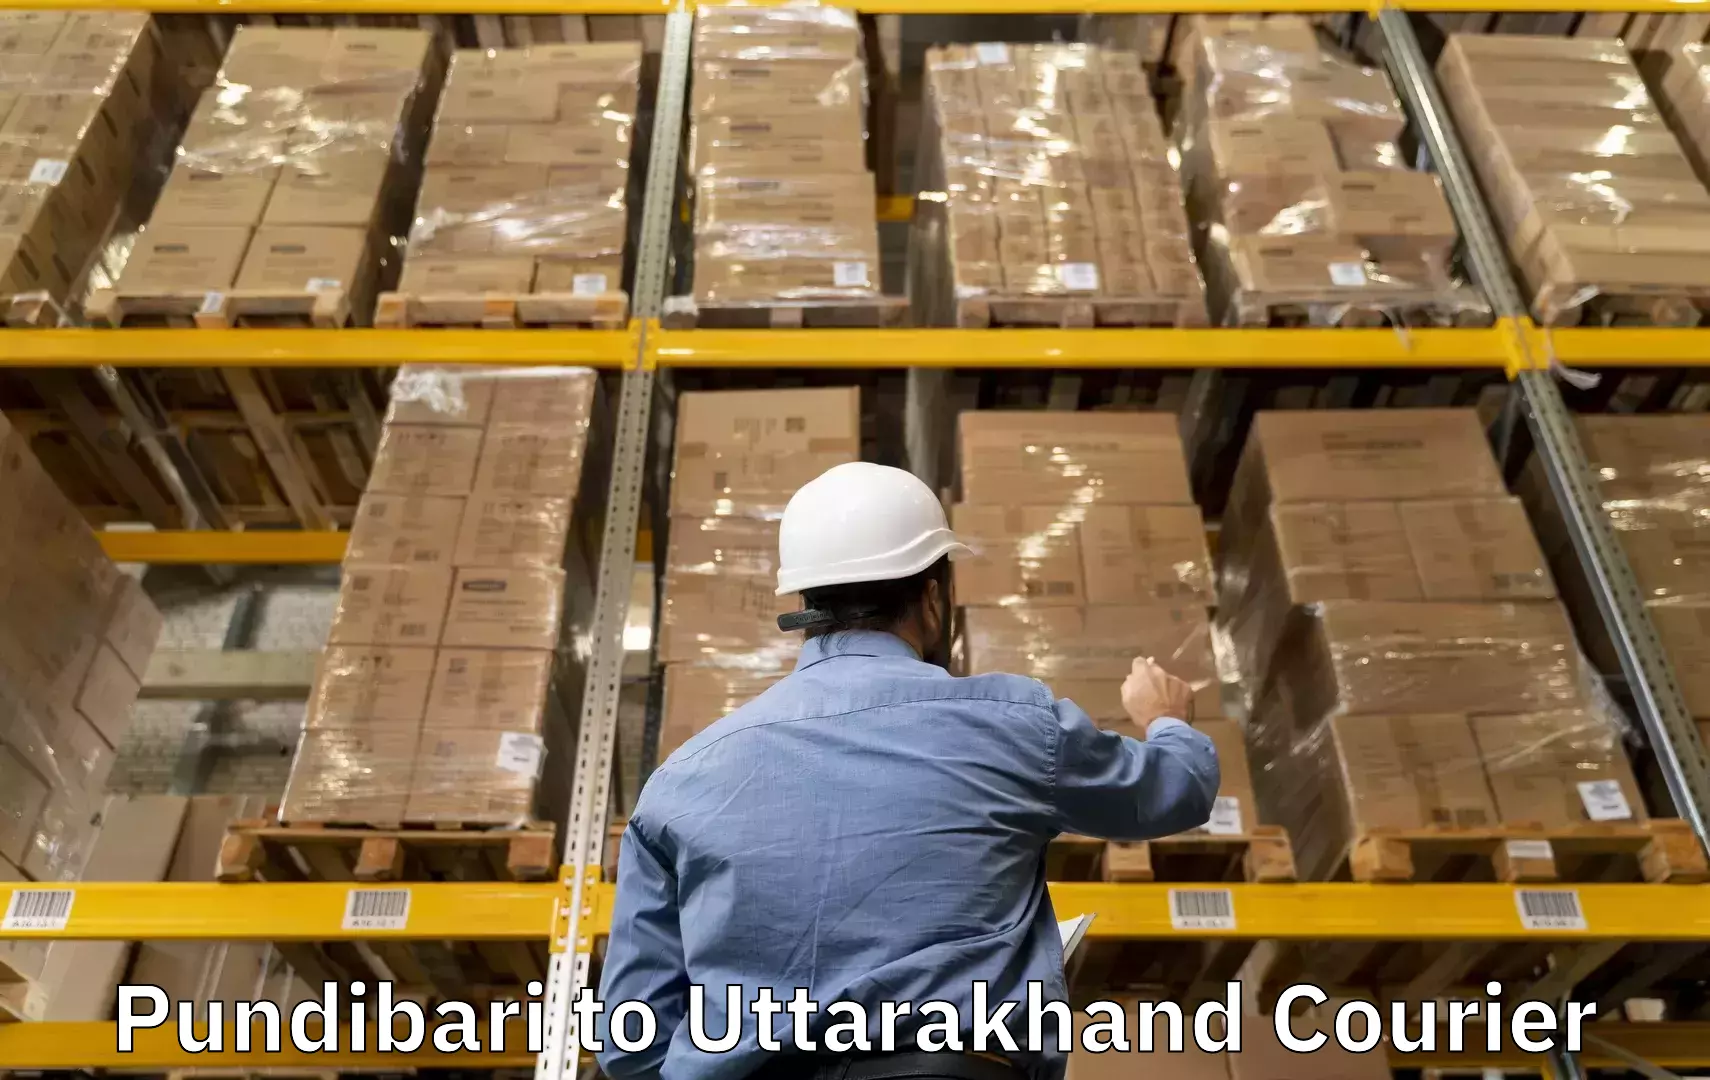 Baggage shipping experts Pundibari to Srinagar Pauri Garhwal